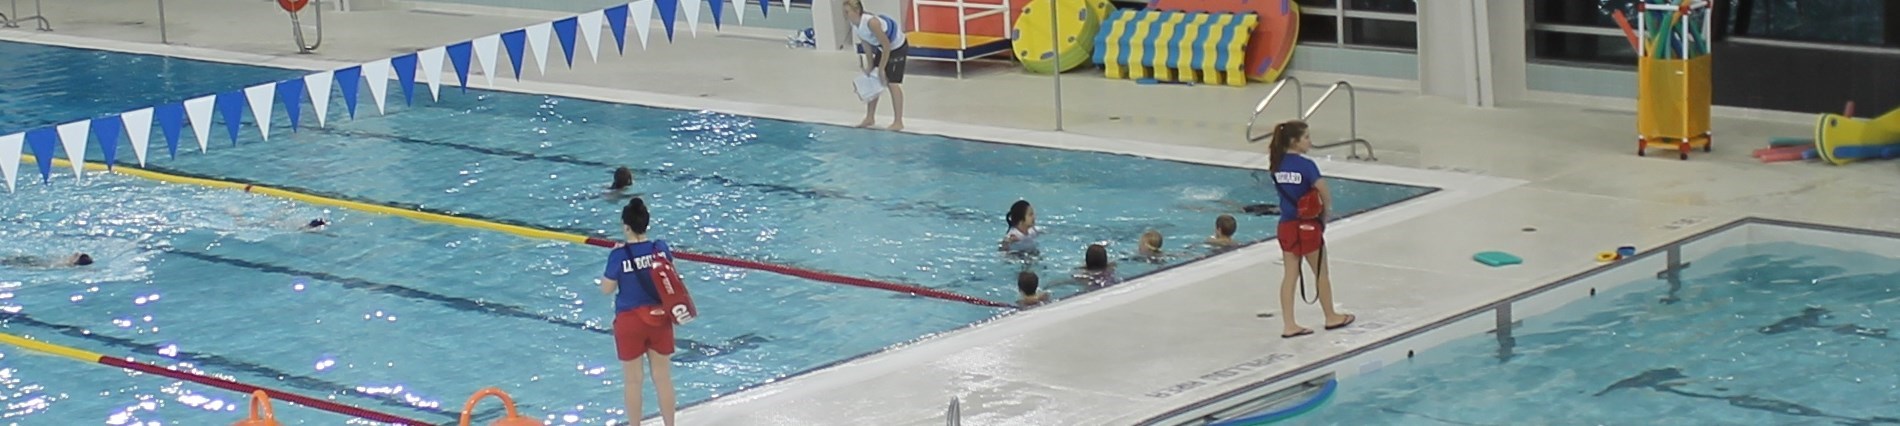 people swimming in pool